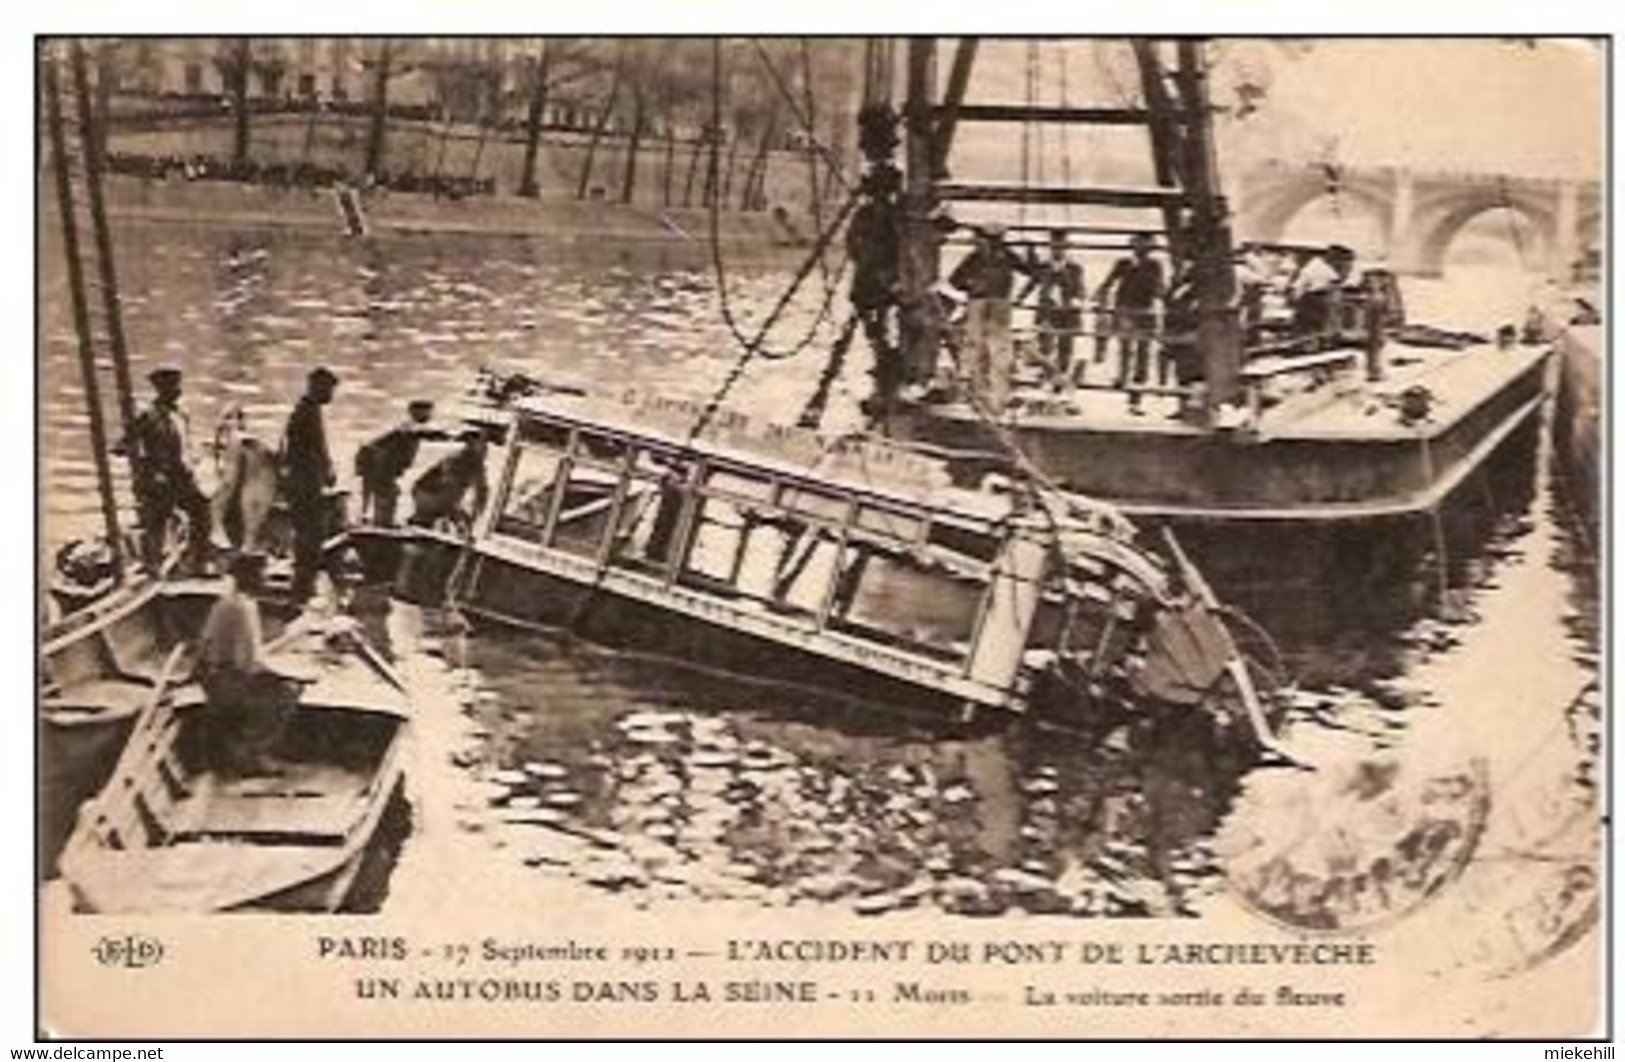 75-PARIS 1911-AUTOBUS TOMBE DU PONT DE L'ARCHEVECHE DANS LA SEINE - Disasters